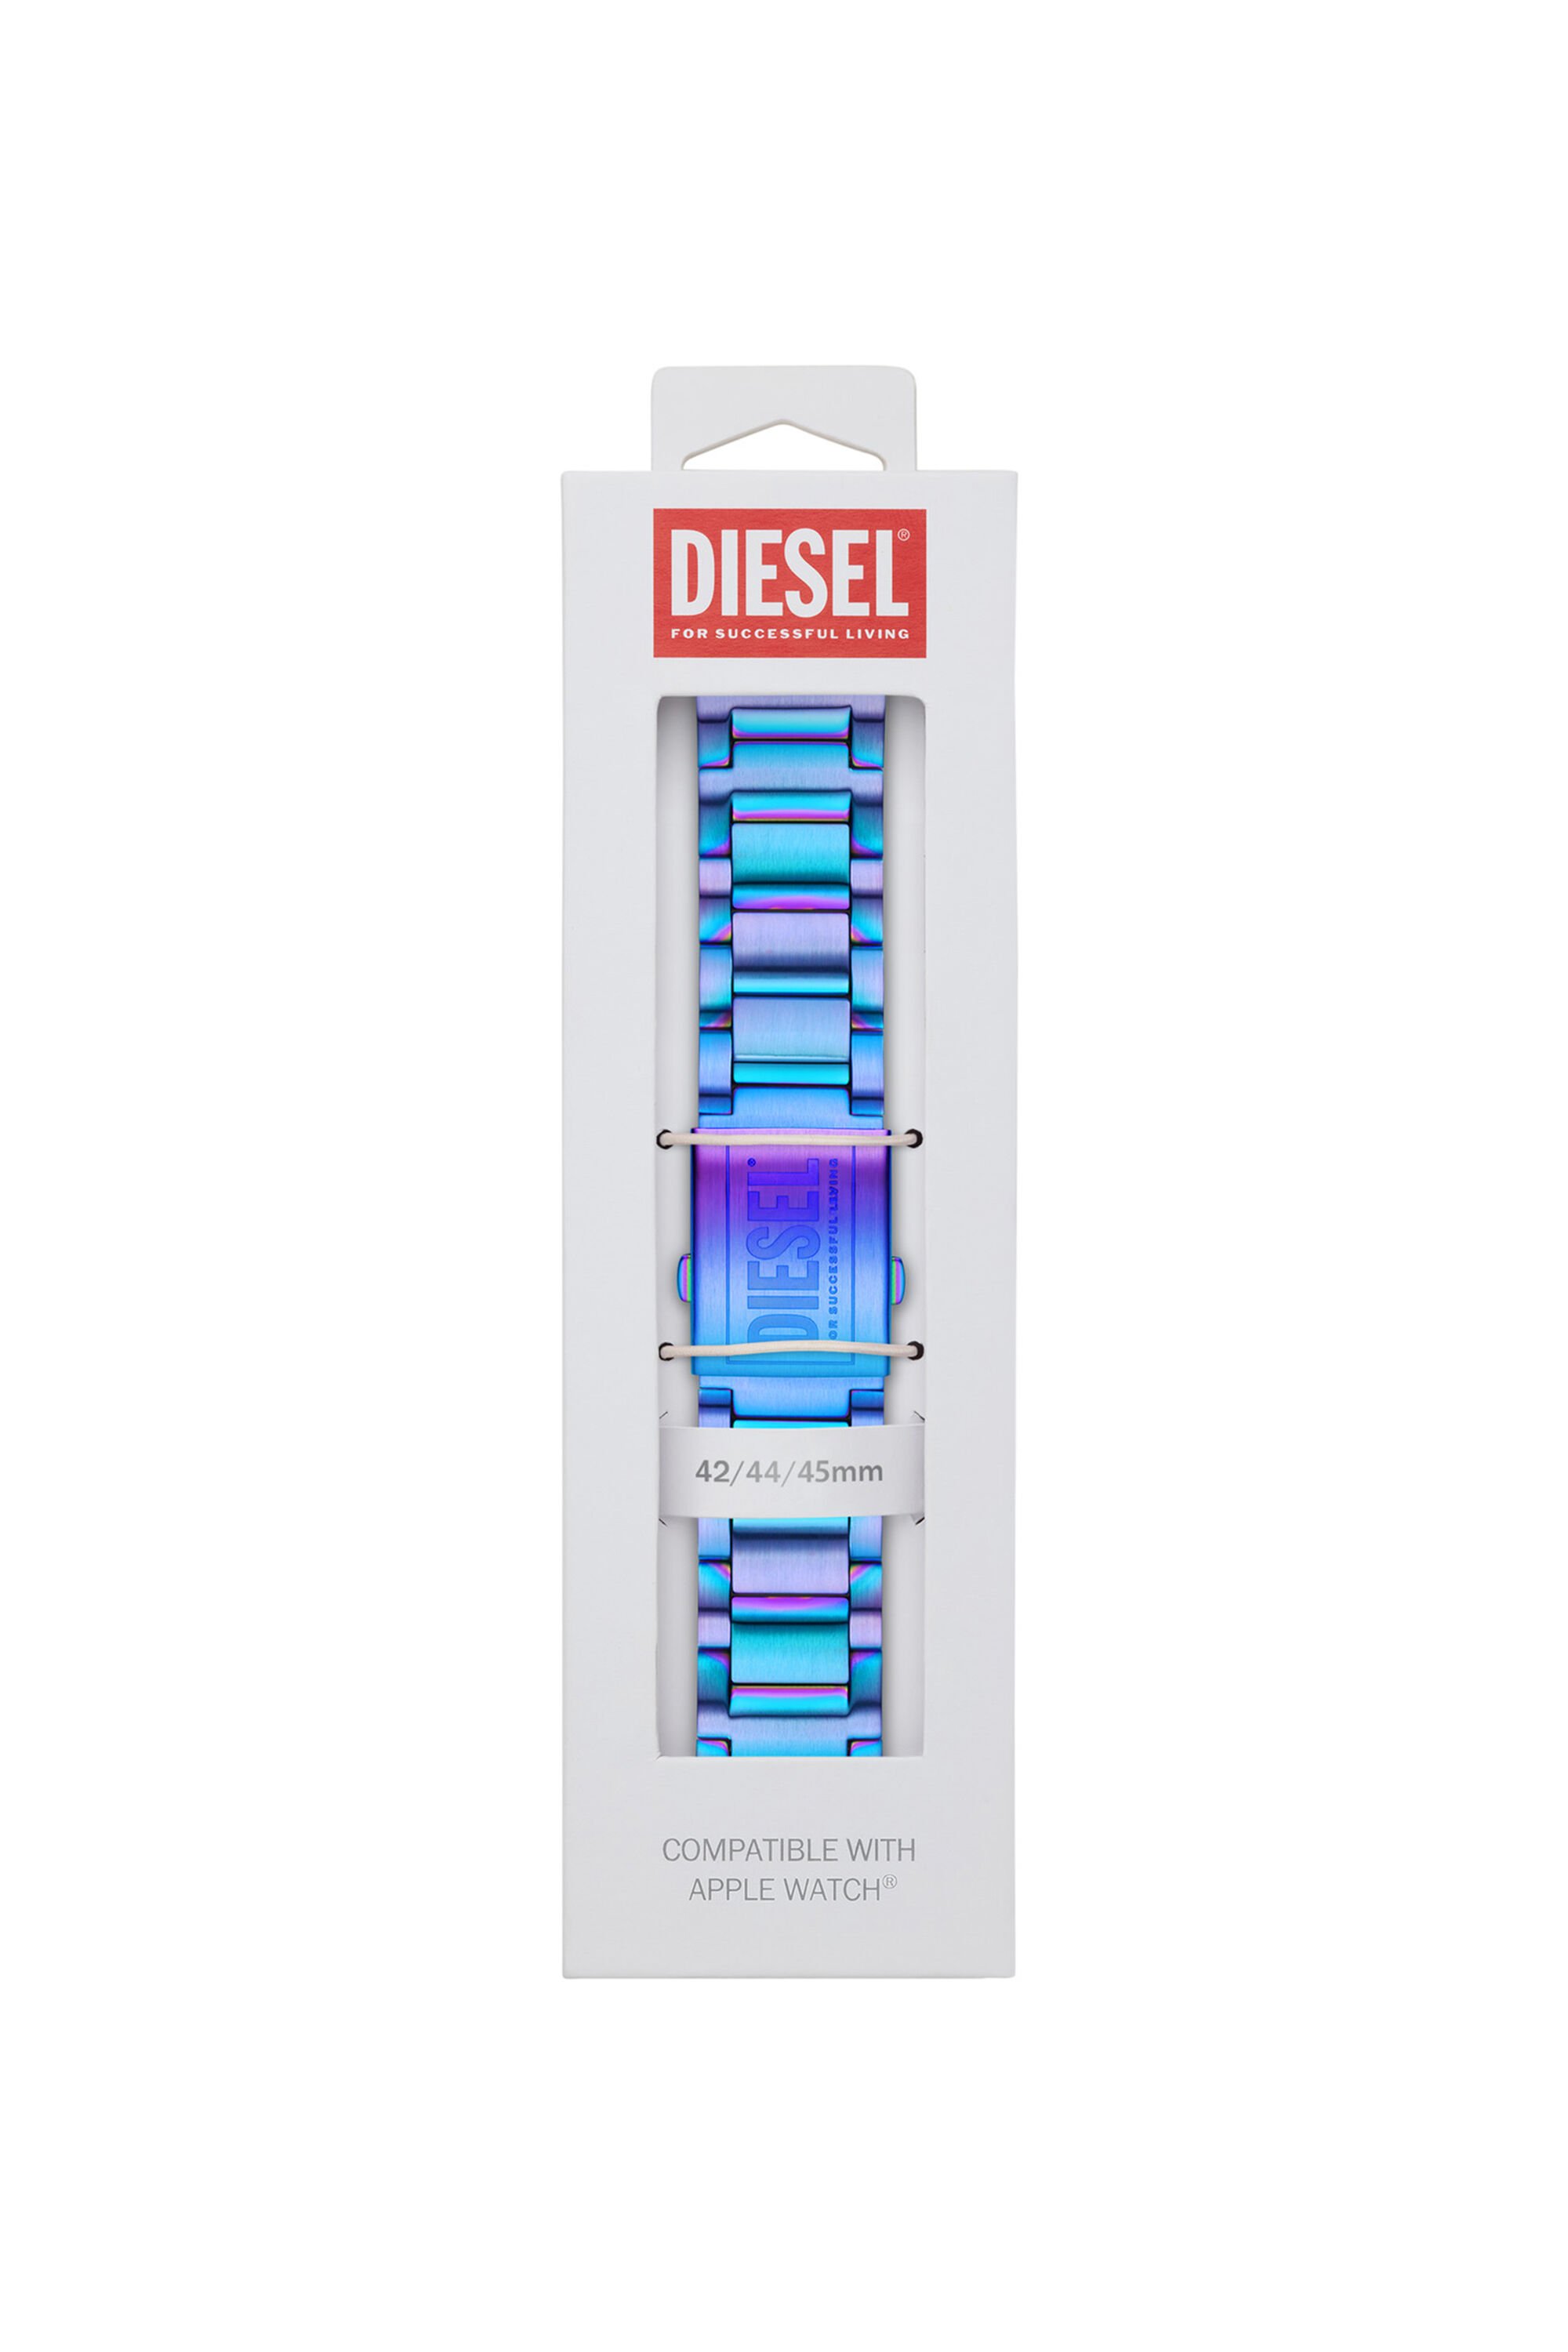 Diesel - DSS007, Bleu - Image 2